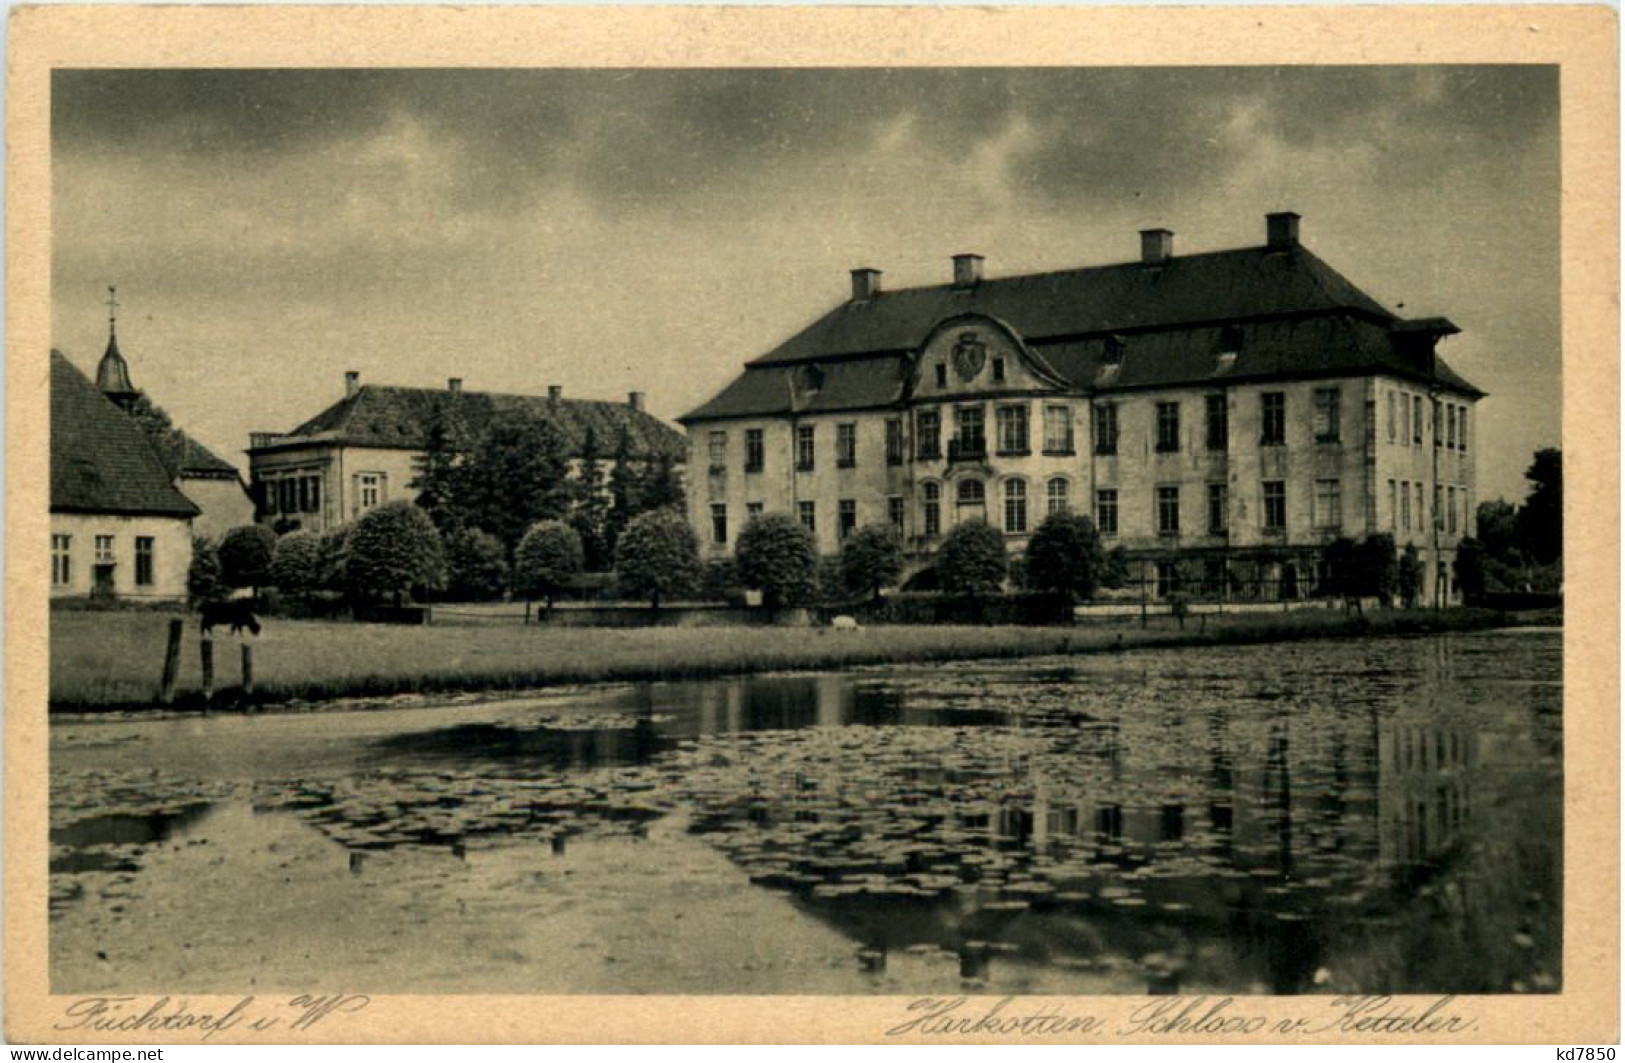 Füchtorf I. W., Harkotten, Schloss V. Ketteler - Warendorf